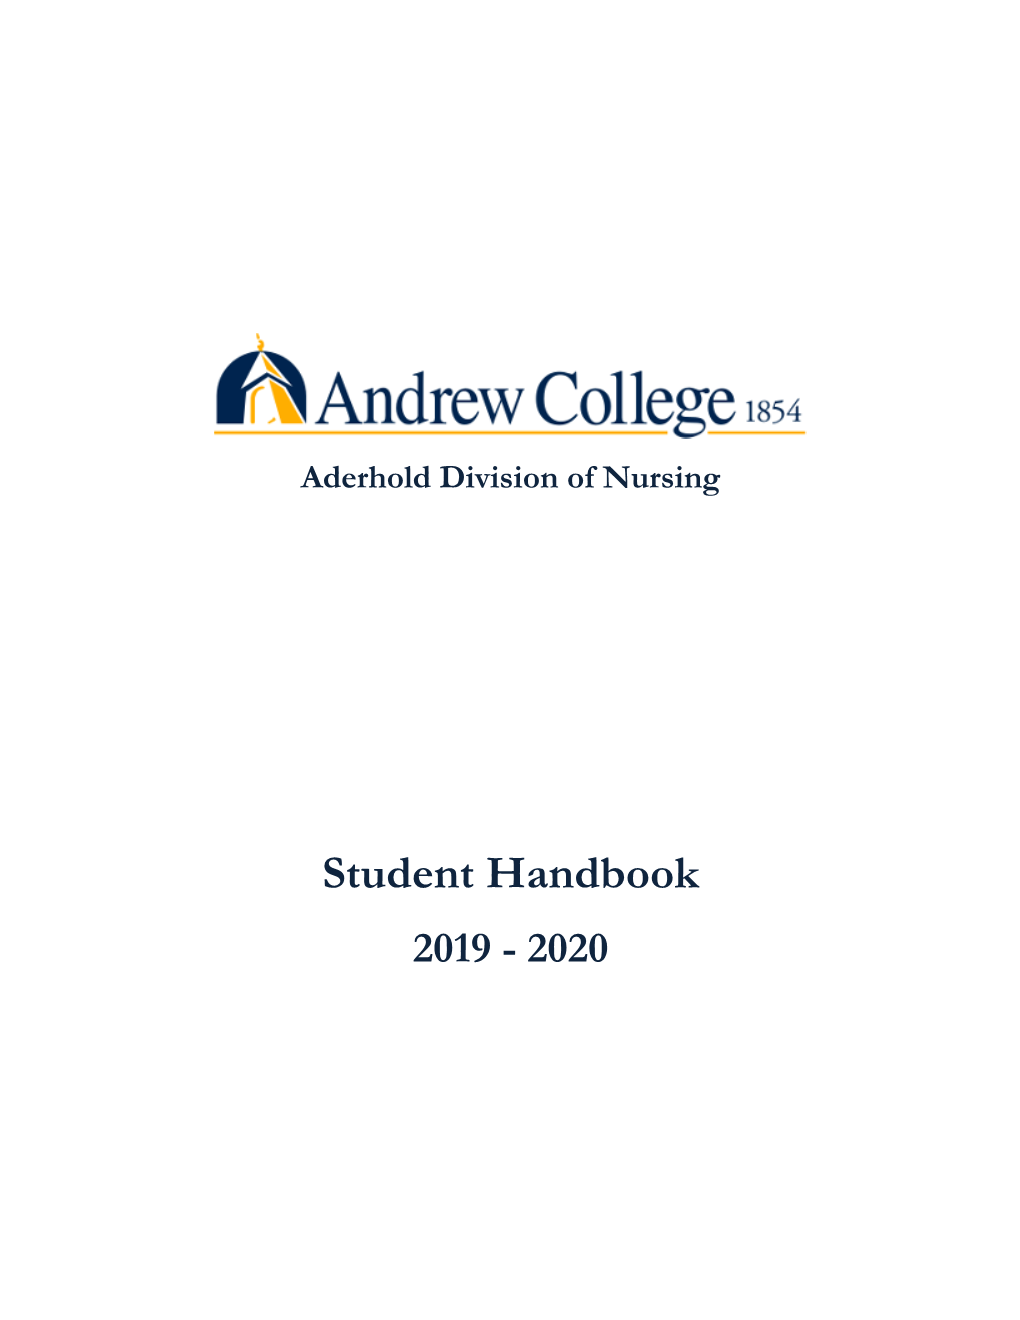 Student Handbook 2019 - 2020